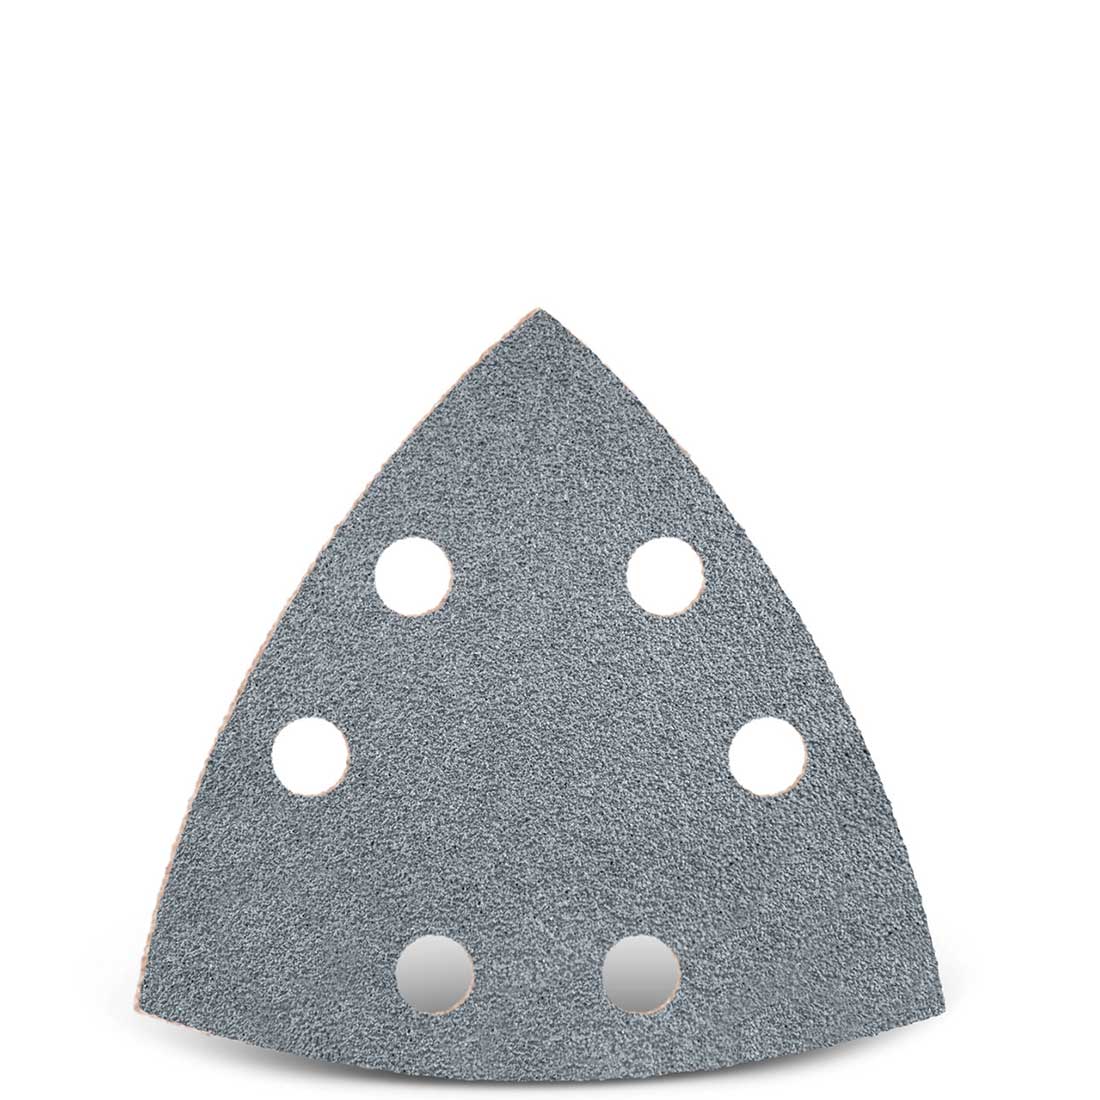 Carte abrasive velcrate MENZER per levigatrici a delta per Bosch, G40–400, 93 mm / 6 fori / corindone semi-friabile con stearato